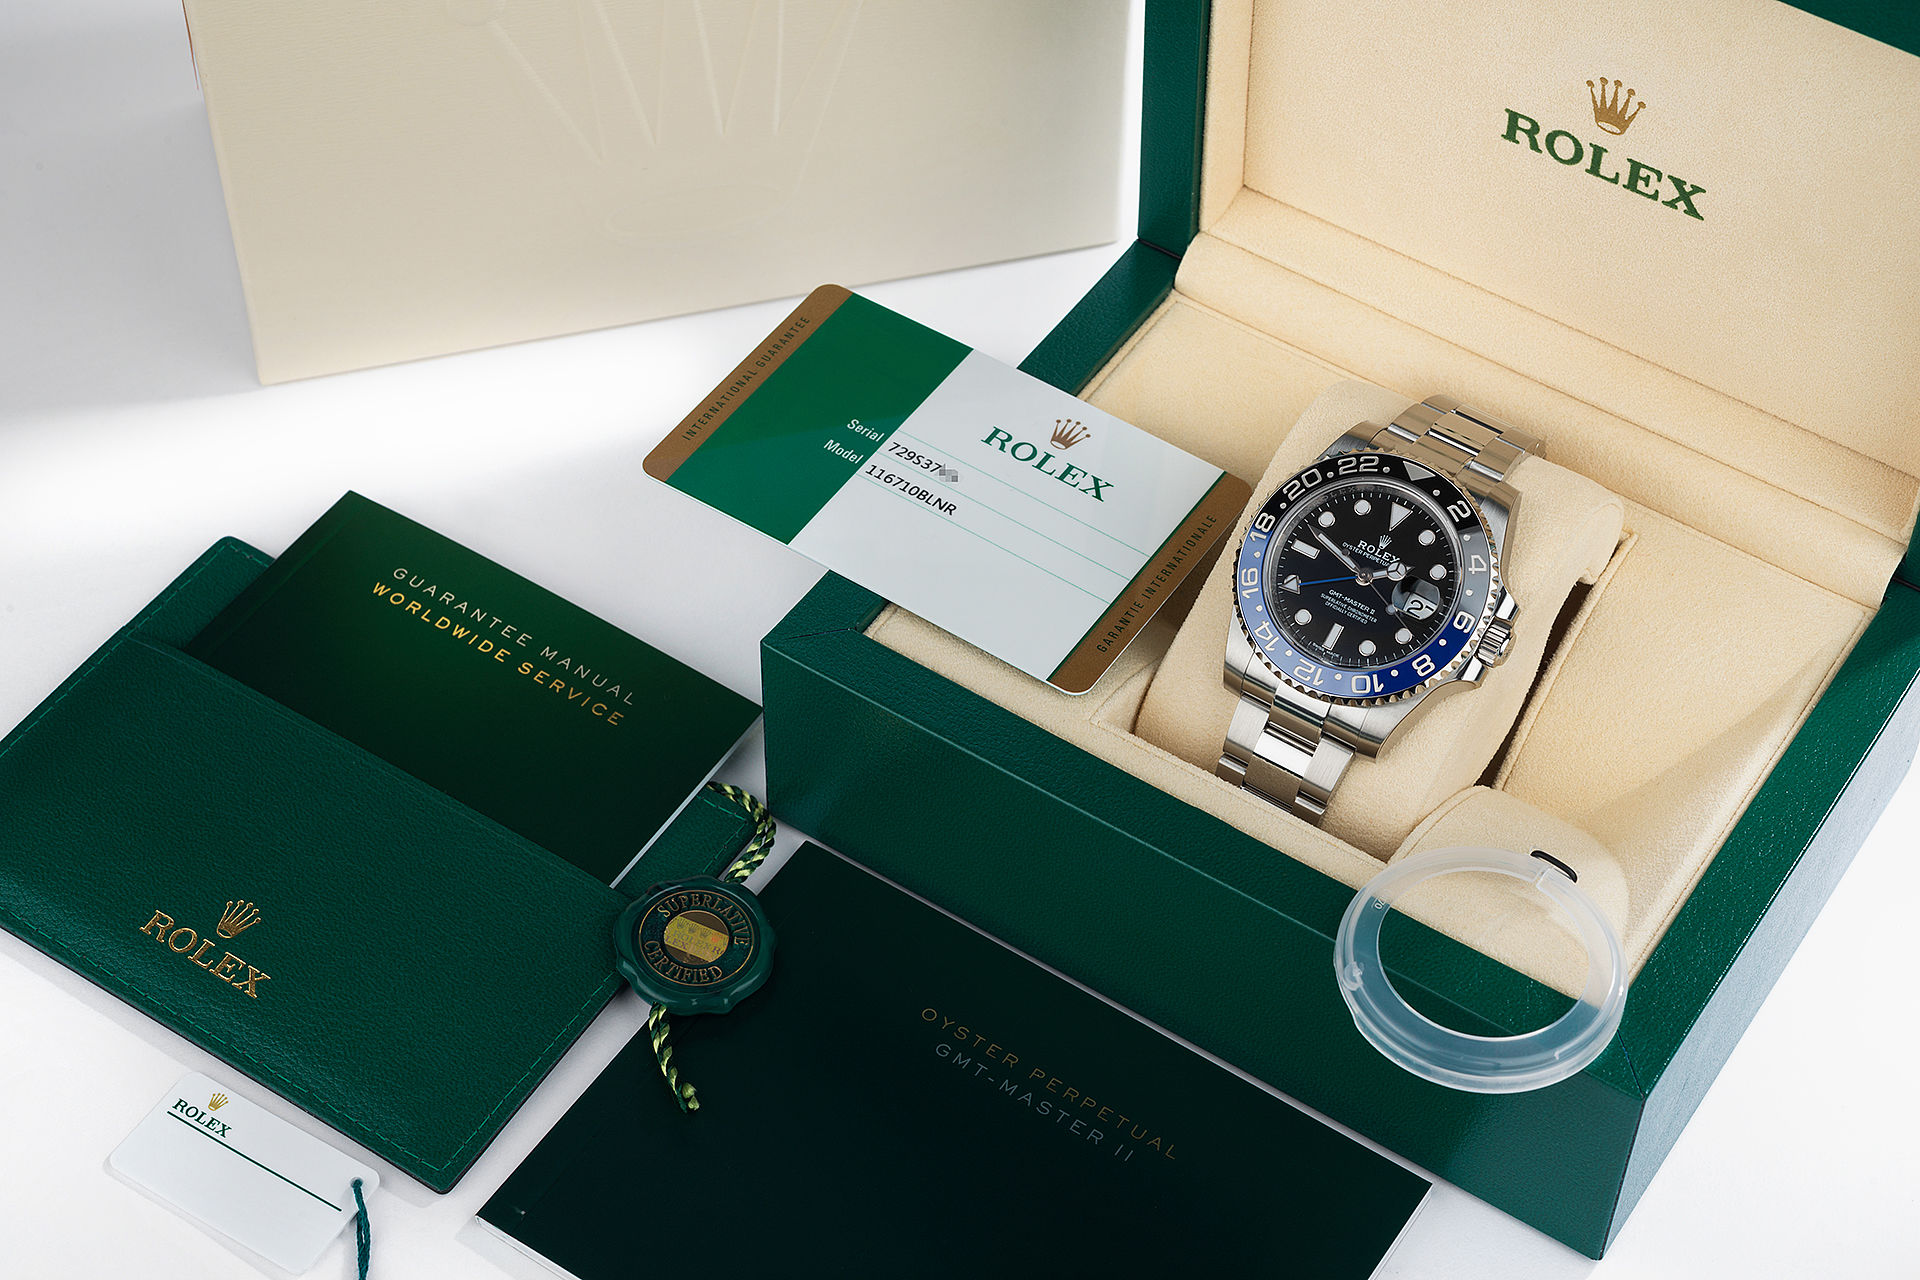 ref 116710BLNR | 5 Year Warranty  | Rolex GMT-Master II